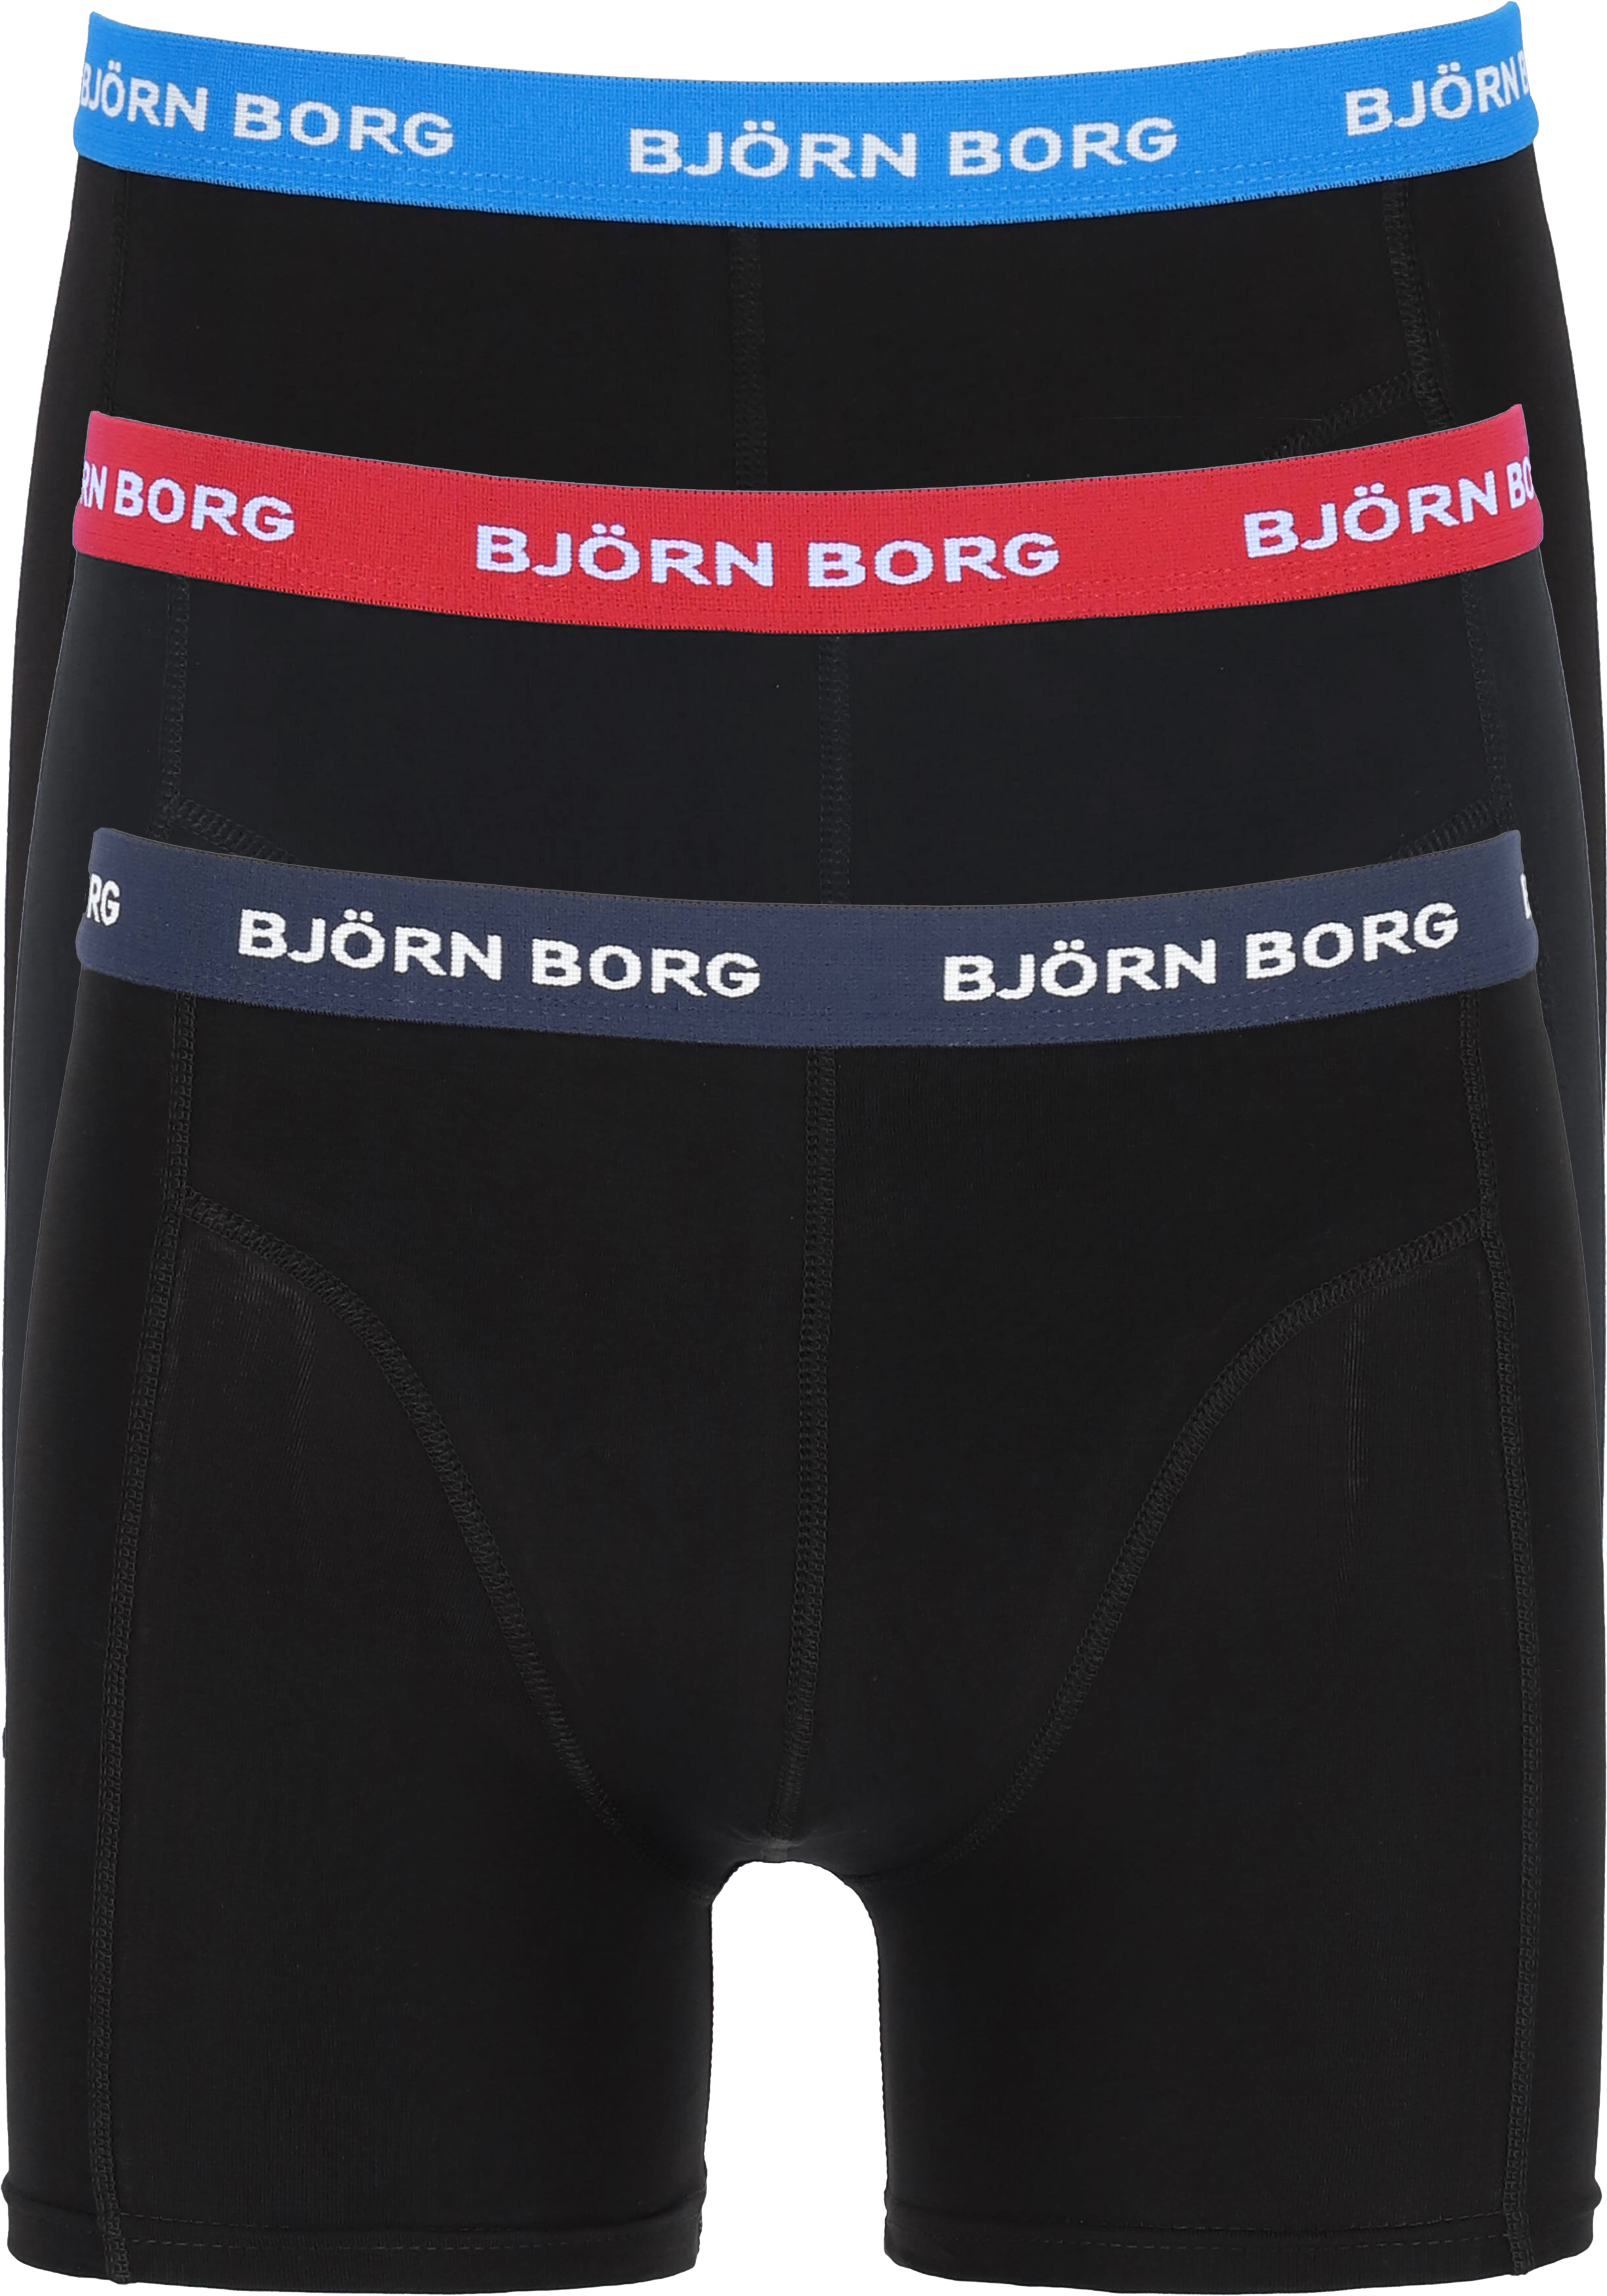 Ontaarden opwinding Verkeersopstopping Bjorn Borg boxershorts Essential (3-pack), heren boxers normale lengte,...  - SALE tot 50% korting